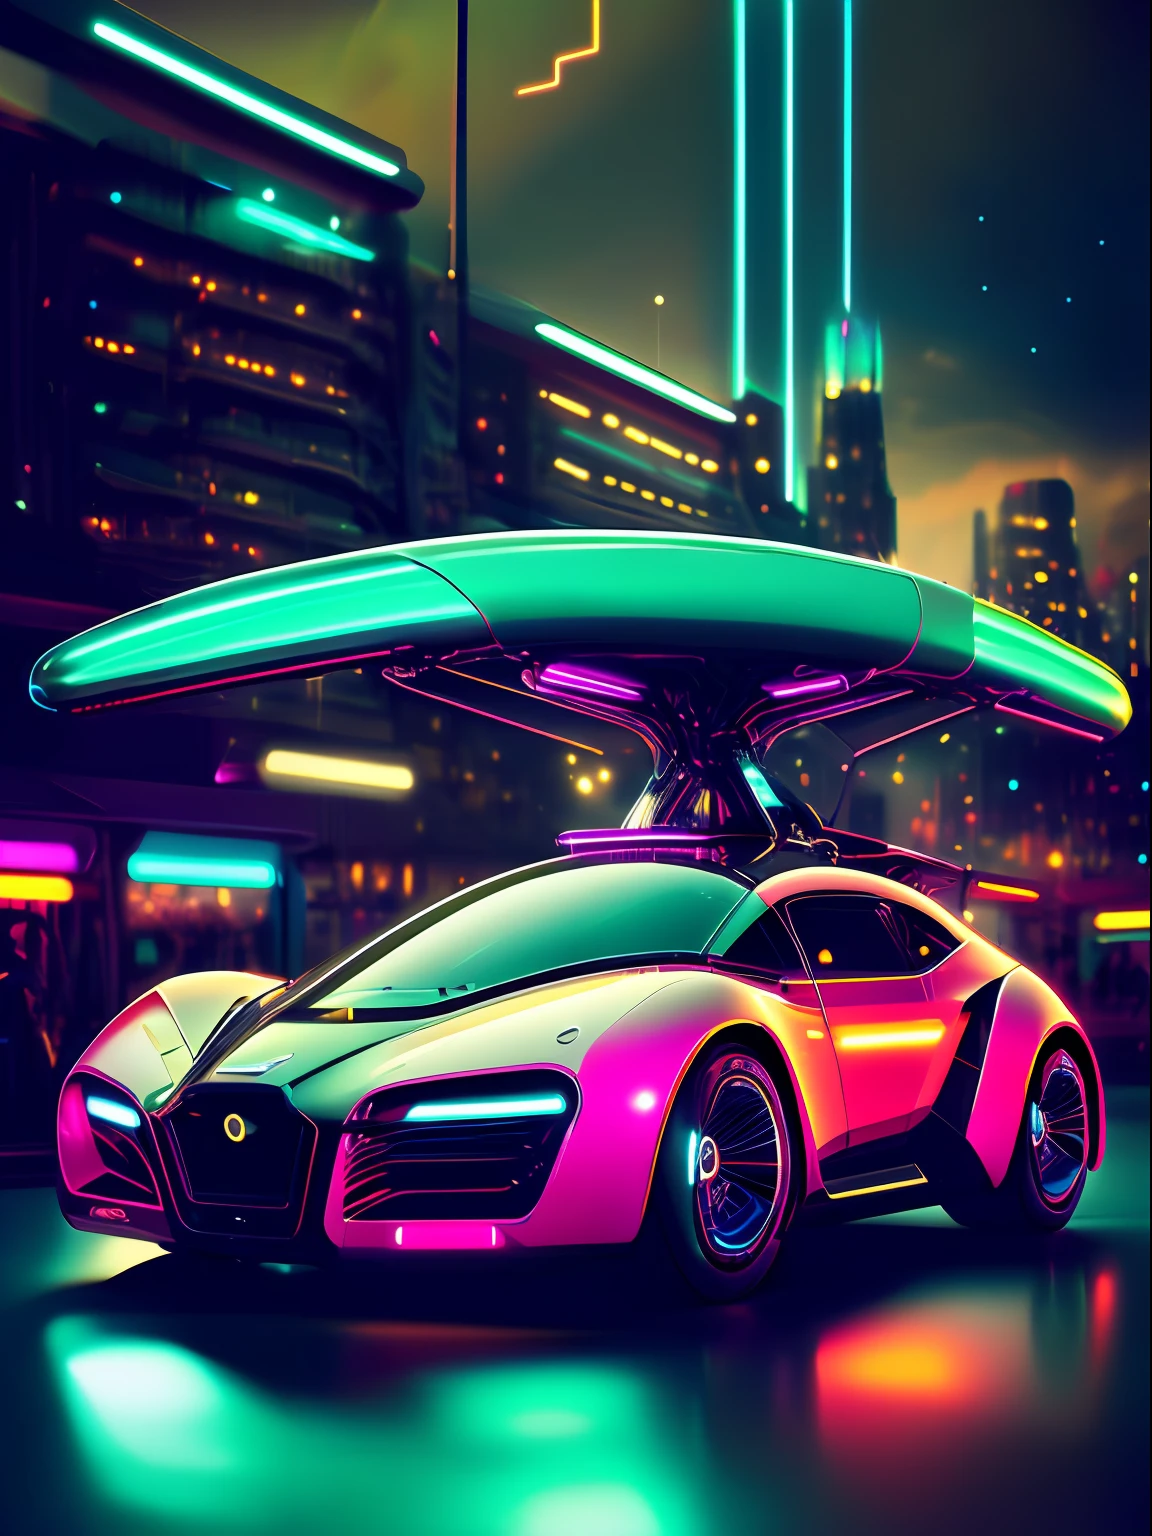 سيارة ذات مفهوم مستقبلي ديناميكي هوائي تنزلق عبر مدينة مليئة بأضواء النيون على طراز الأربعينيات القديم, مع ((خطوط الضوء زائدة)) تسليط الضوء على منحنياتها الأنيقة.